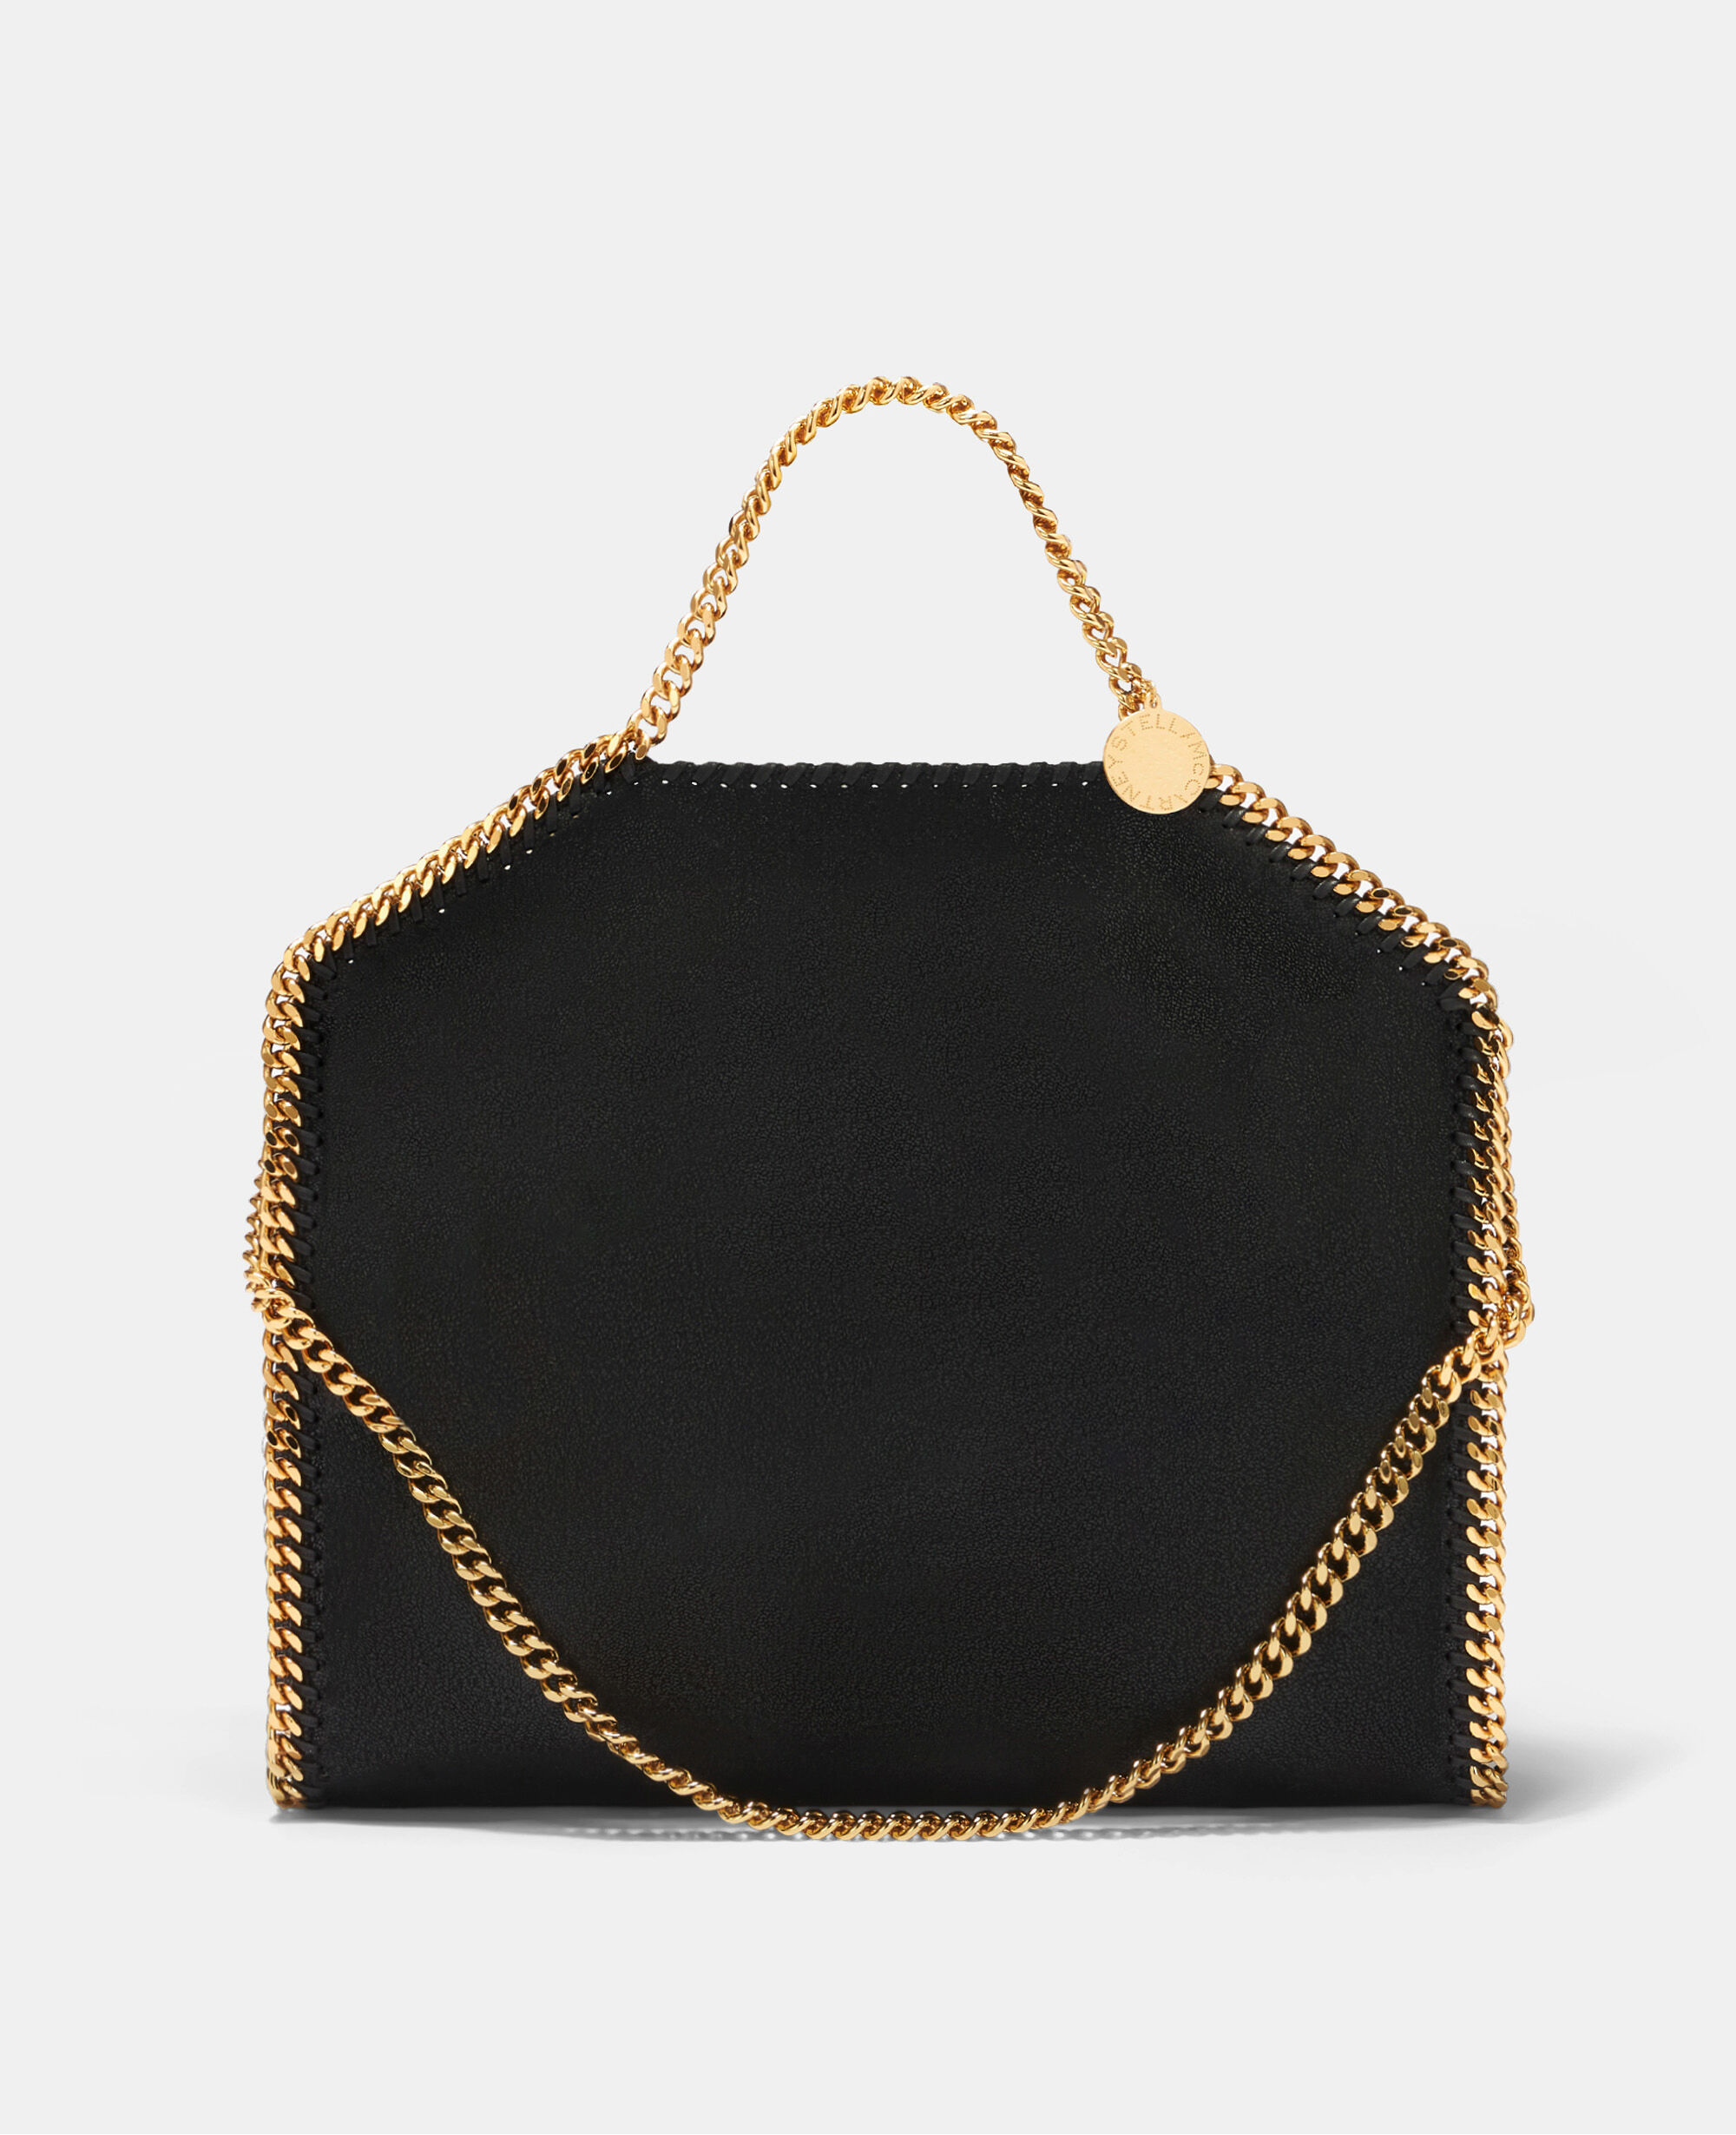 STELLA MCCARTNEY Perforated vegetarian leather shoulder bag | NET-A-PORTER